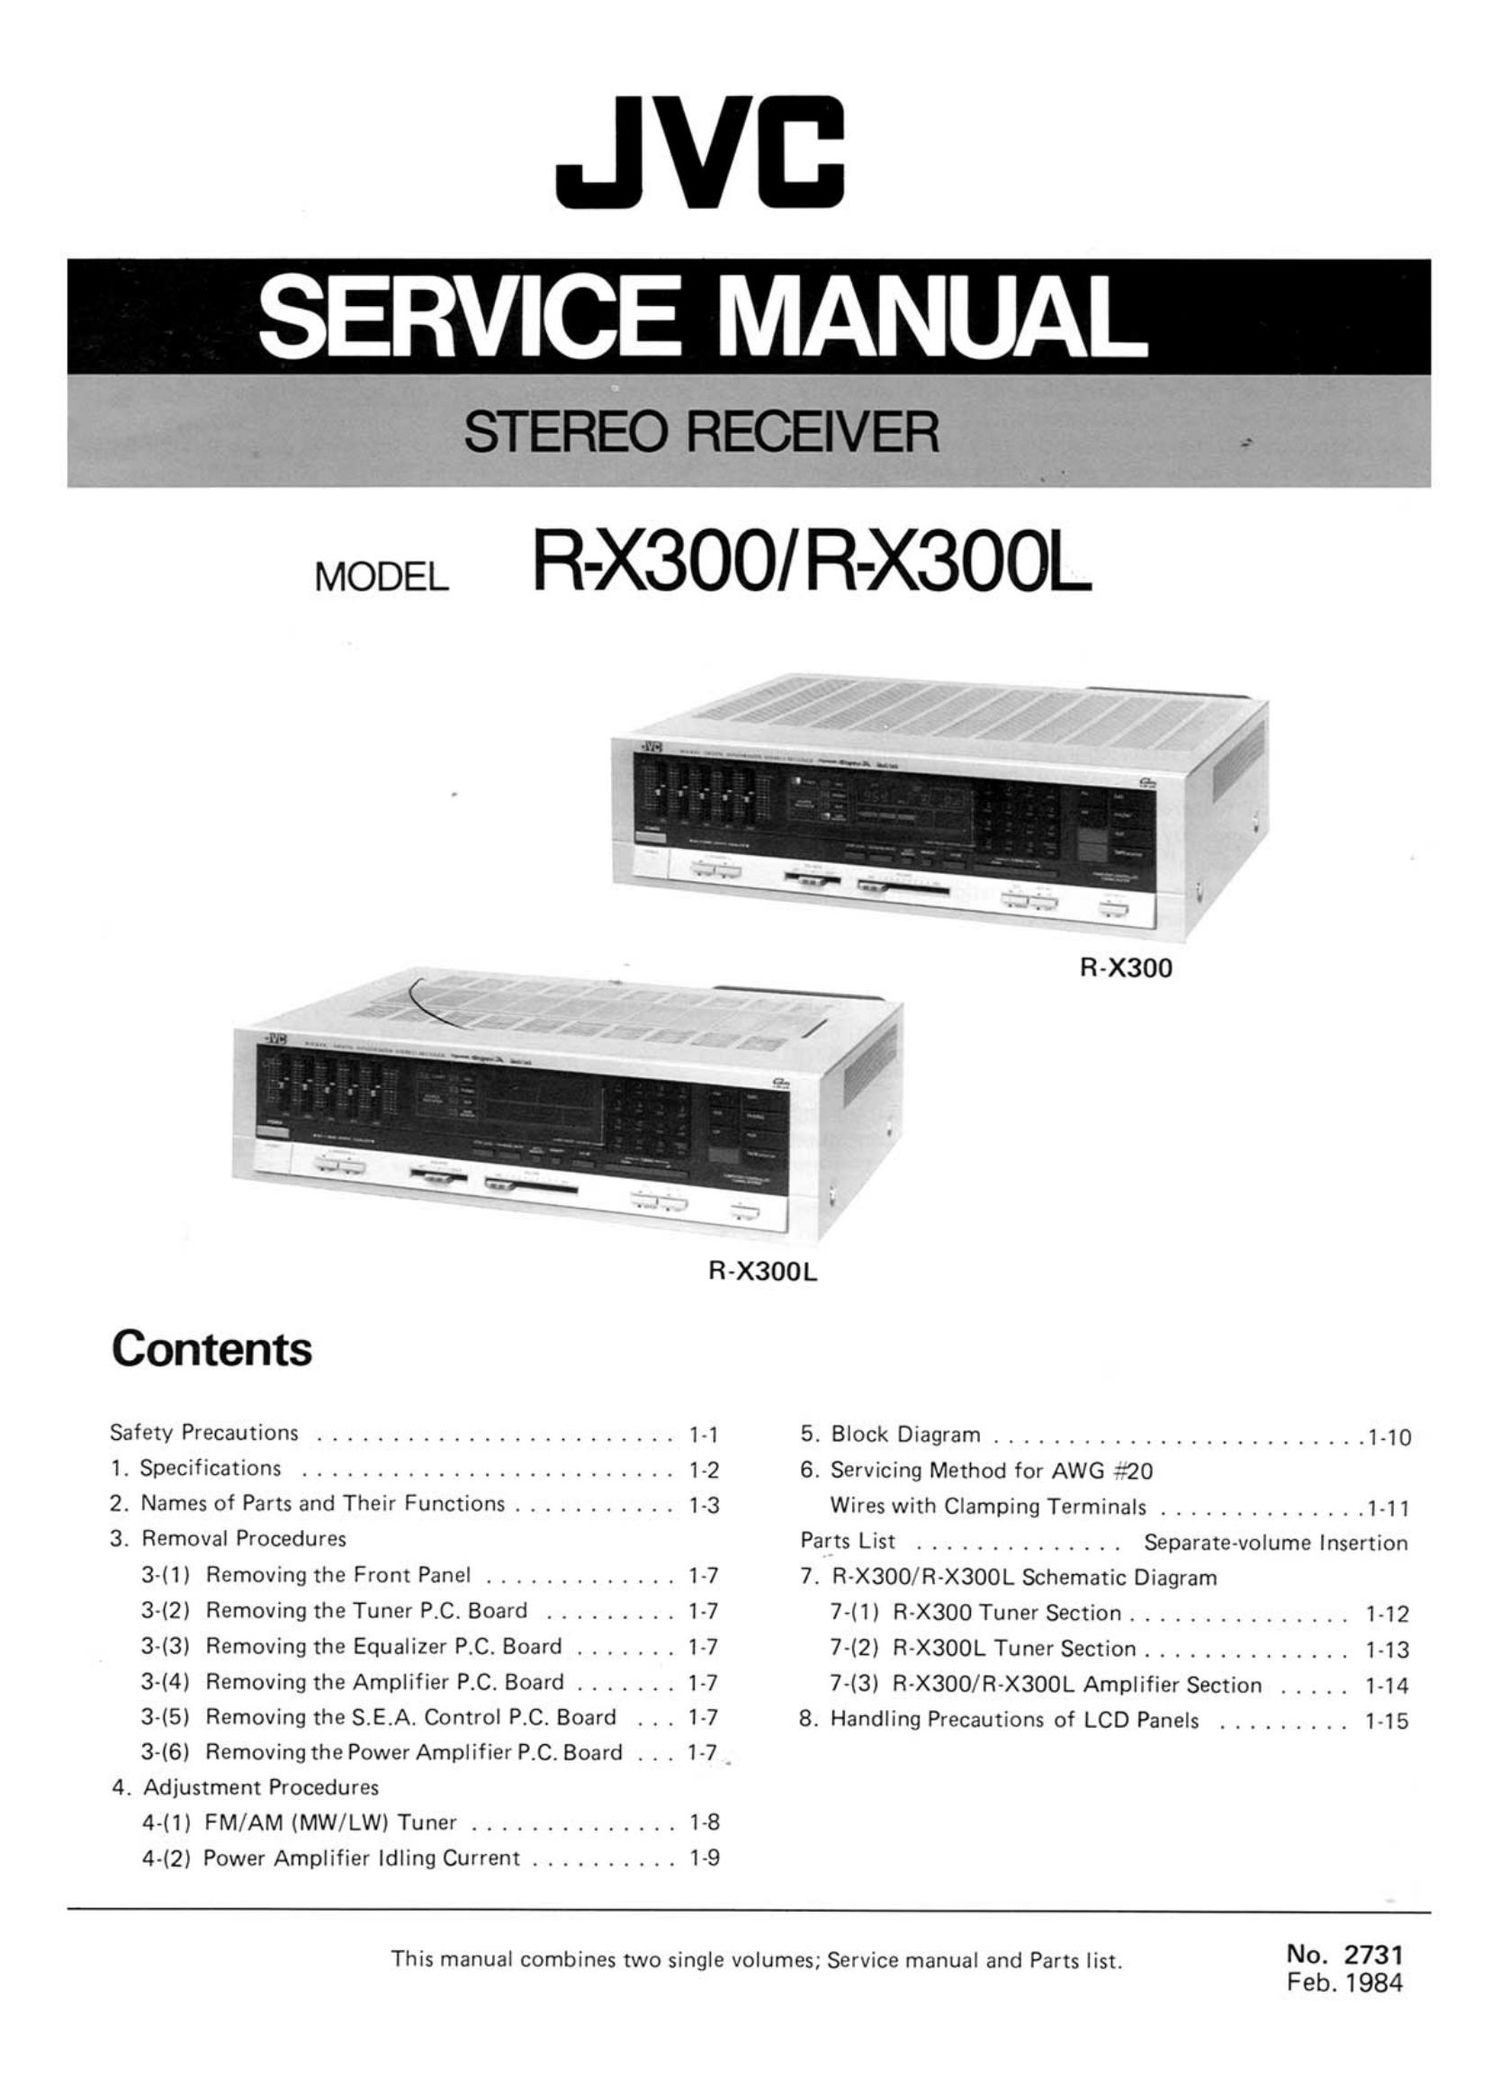 Jvc R X300L Service Manual